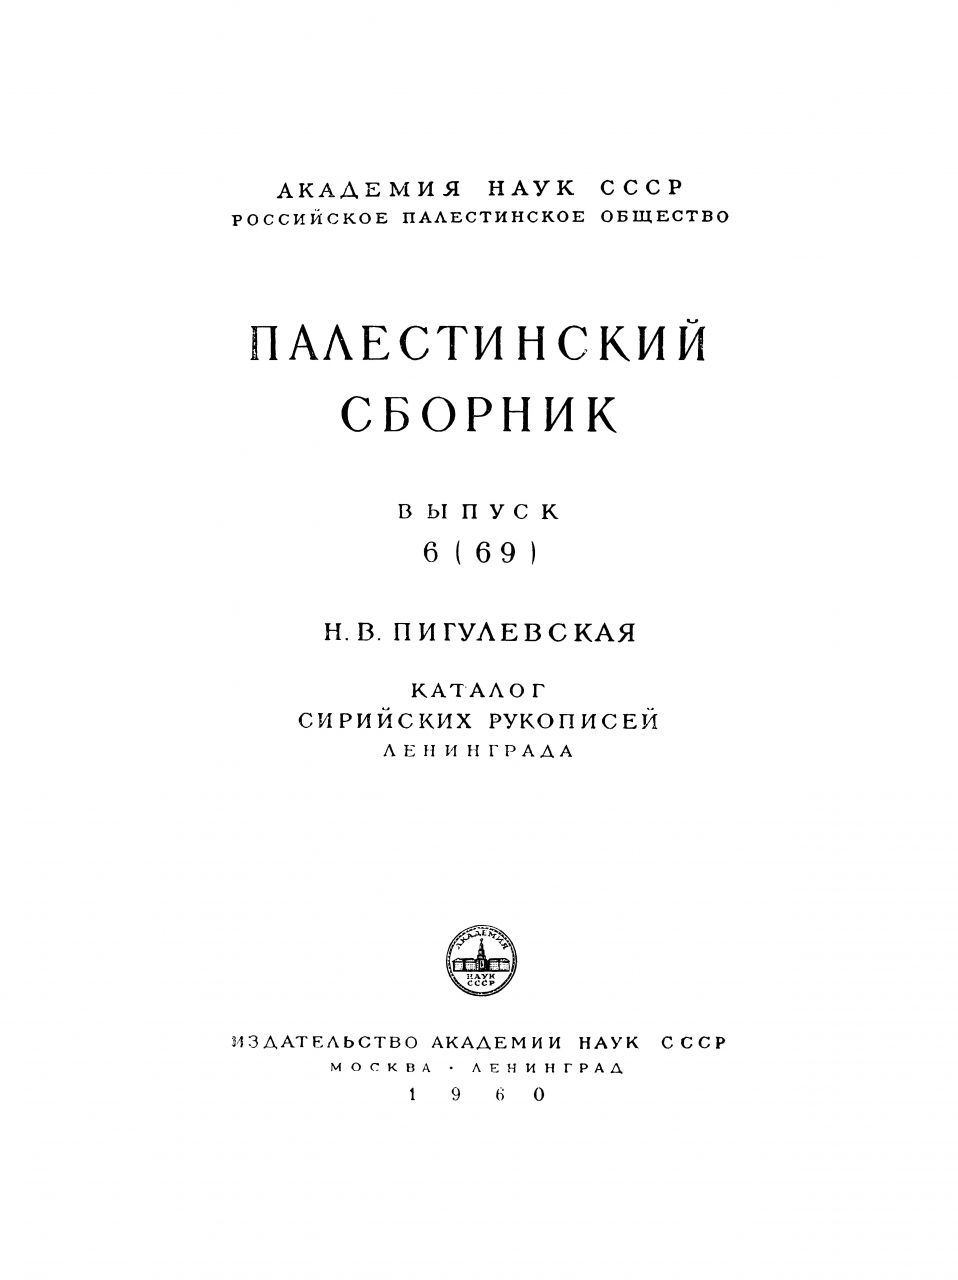 Пигулевская, Н.В. Каталог сирийских рукописей Ленинграда